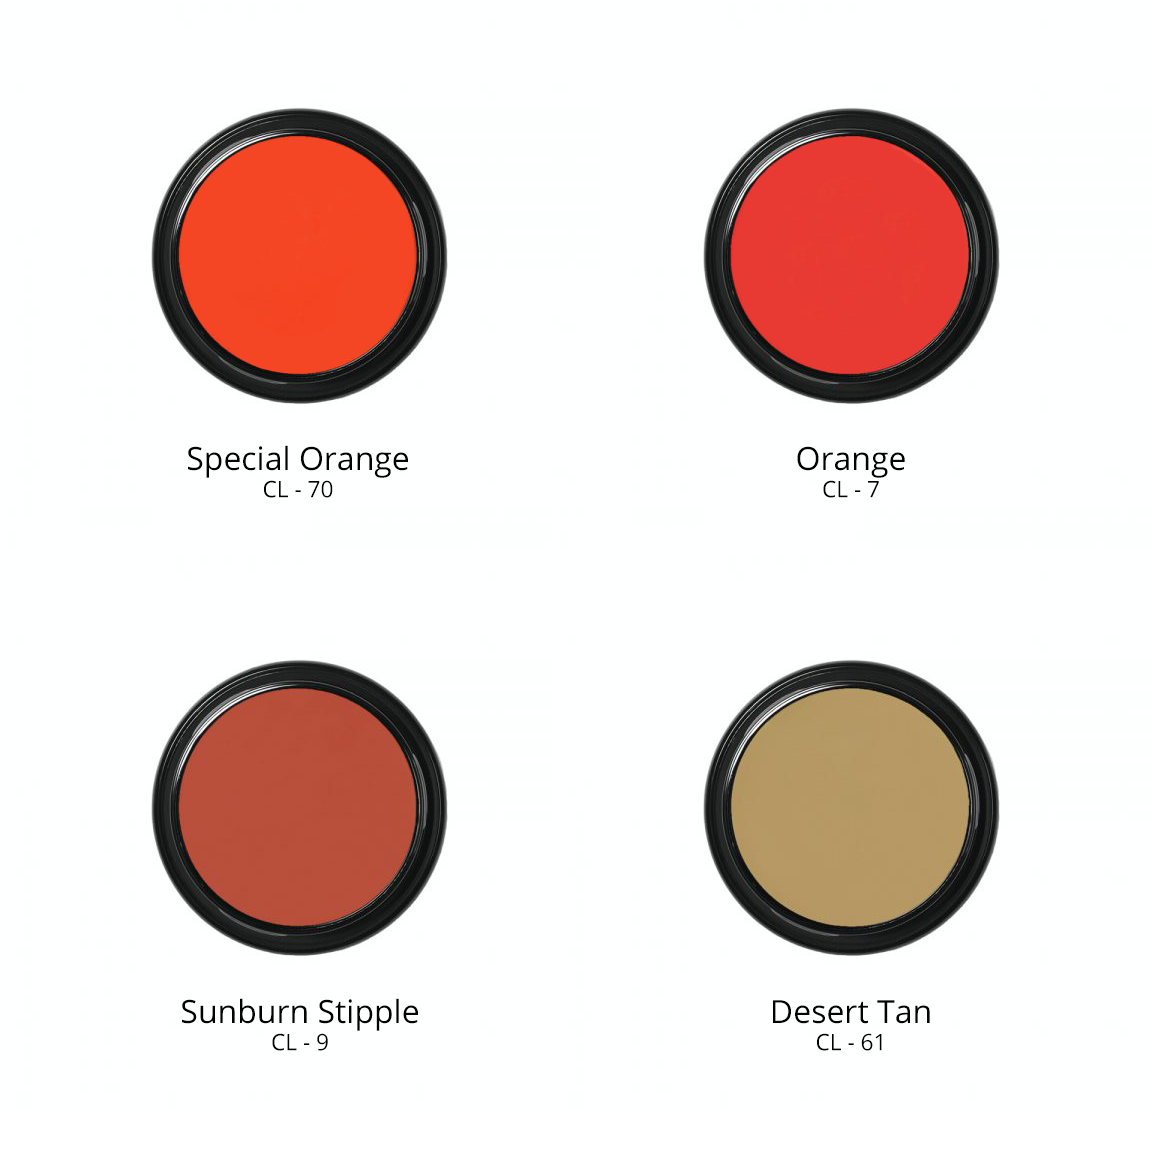 Ben Nye Creme Colors in Special Orange CL - 70, Orange CL - 7, Sunburn Stipple CL - 9, and Desert Tan CL - 61.